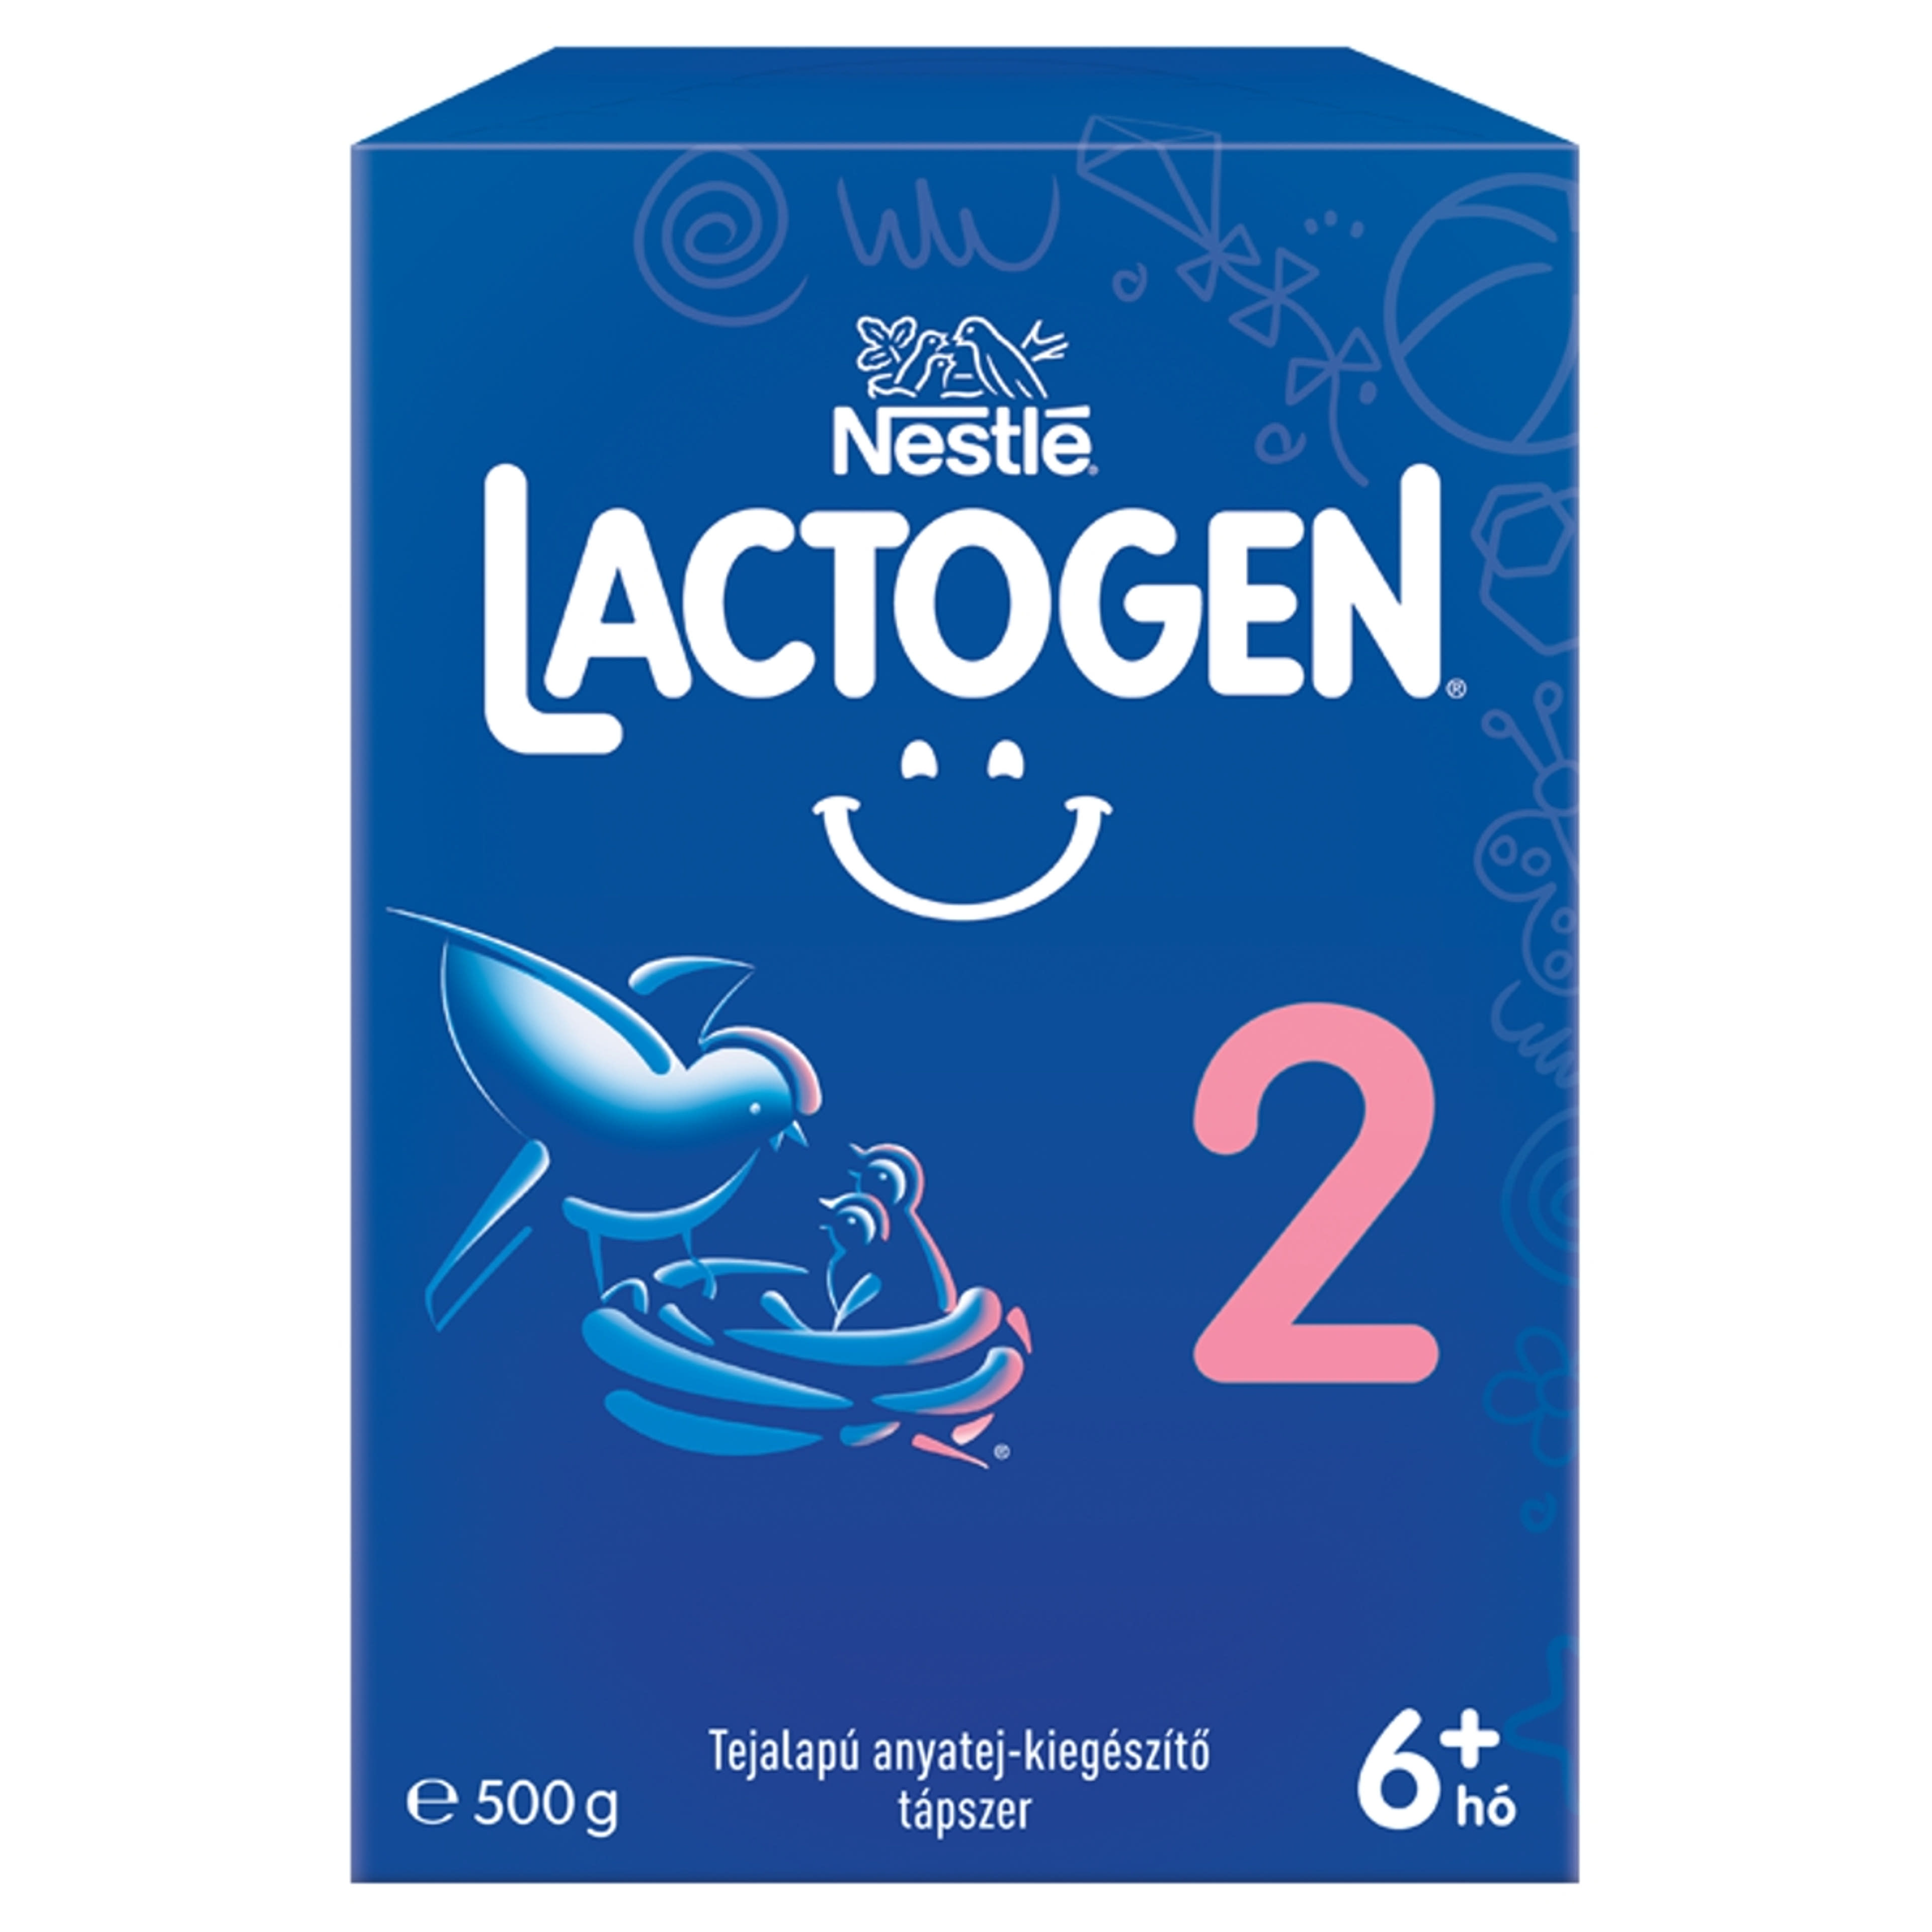 Nestlé Lactogen 2 tejalapú anyatej-kiegészítő tápszer 6+ hónapos kortól - 500 g-1